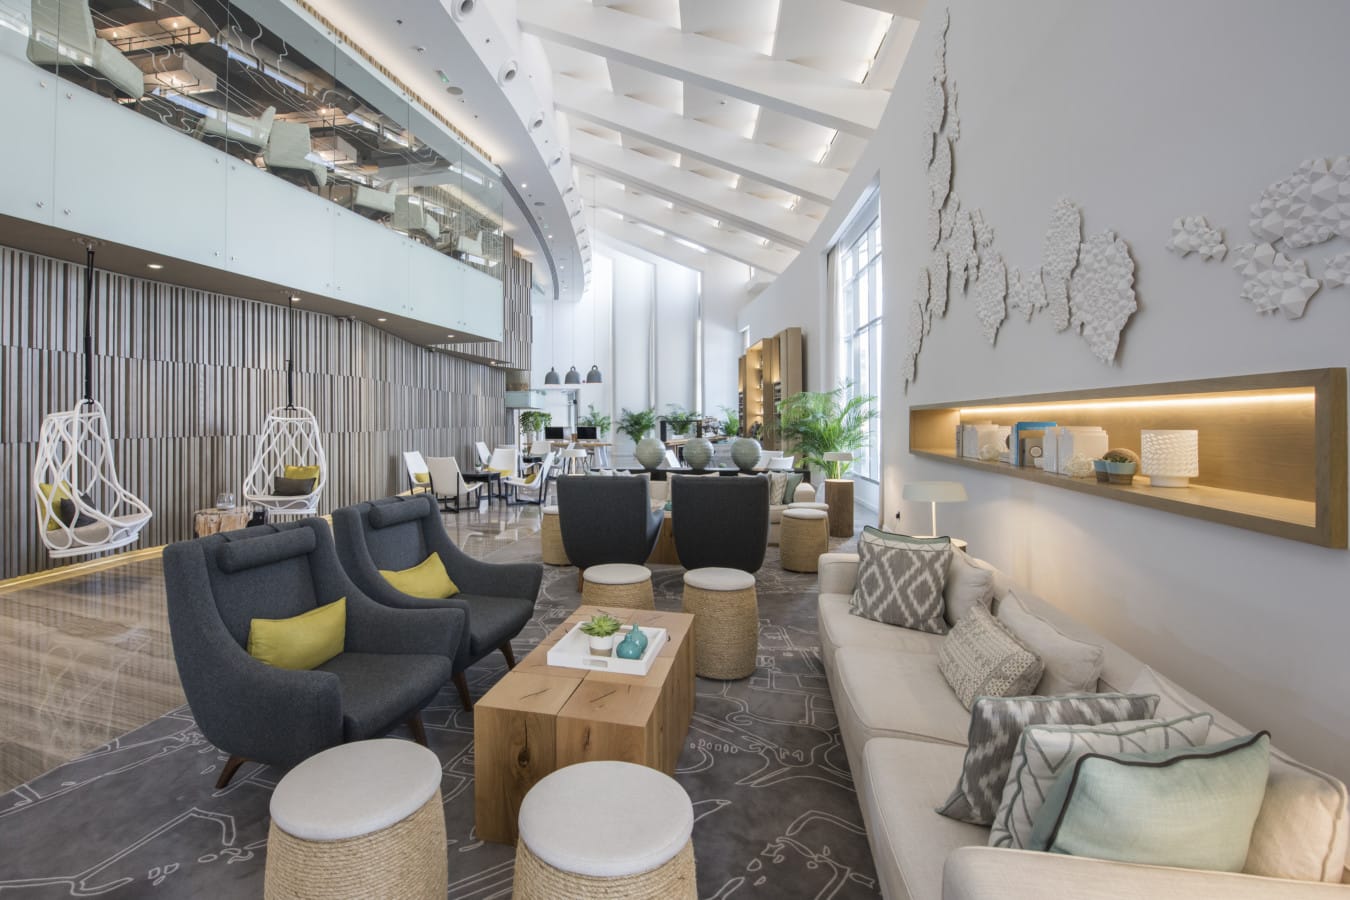 O Hub do Le Royal Meridien possui pequenas ilhas com sofás e poltronas para propocionarem conforto aos hóspedes Foto Birgitte Godski - Le Royal Meridien traz novo olhar sobre arquitetura em Dubai